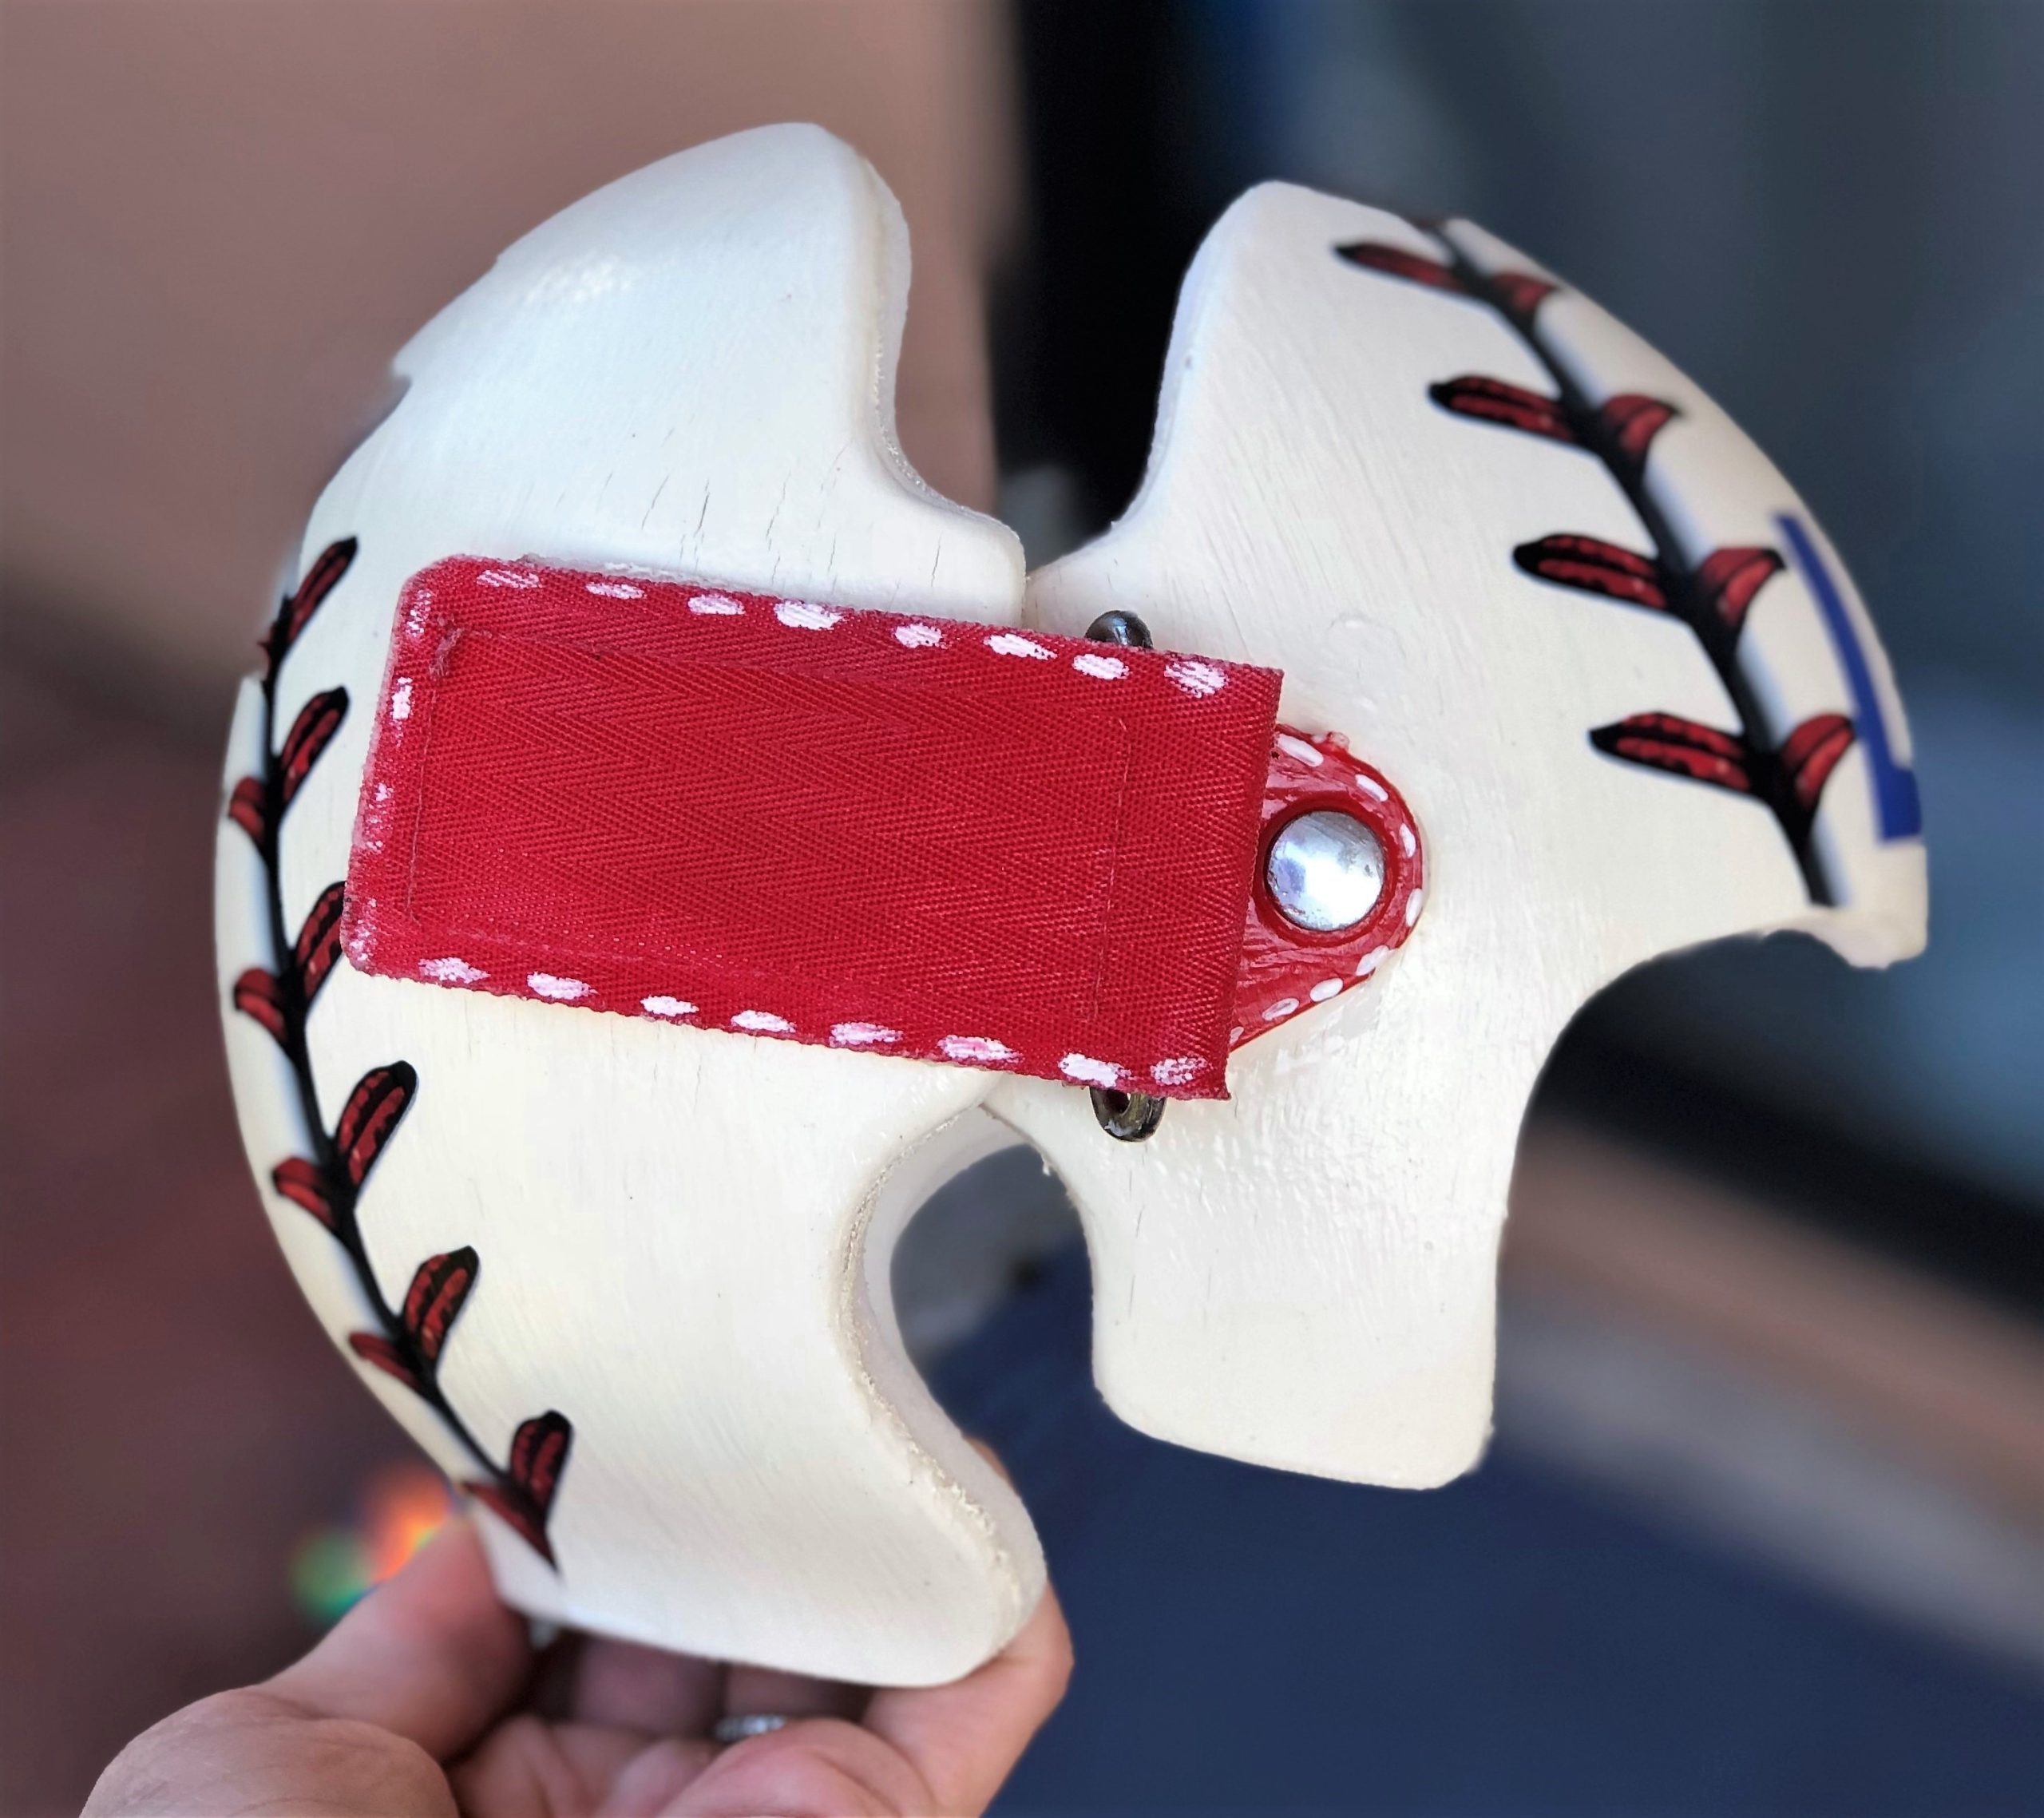 Baseball stitching 3d cranial band